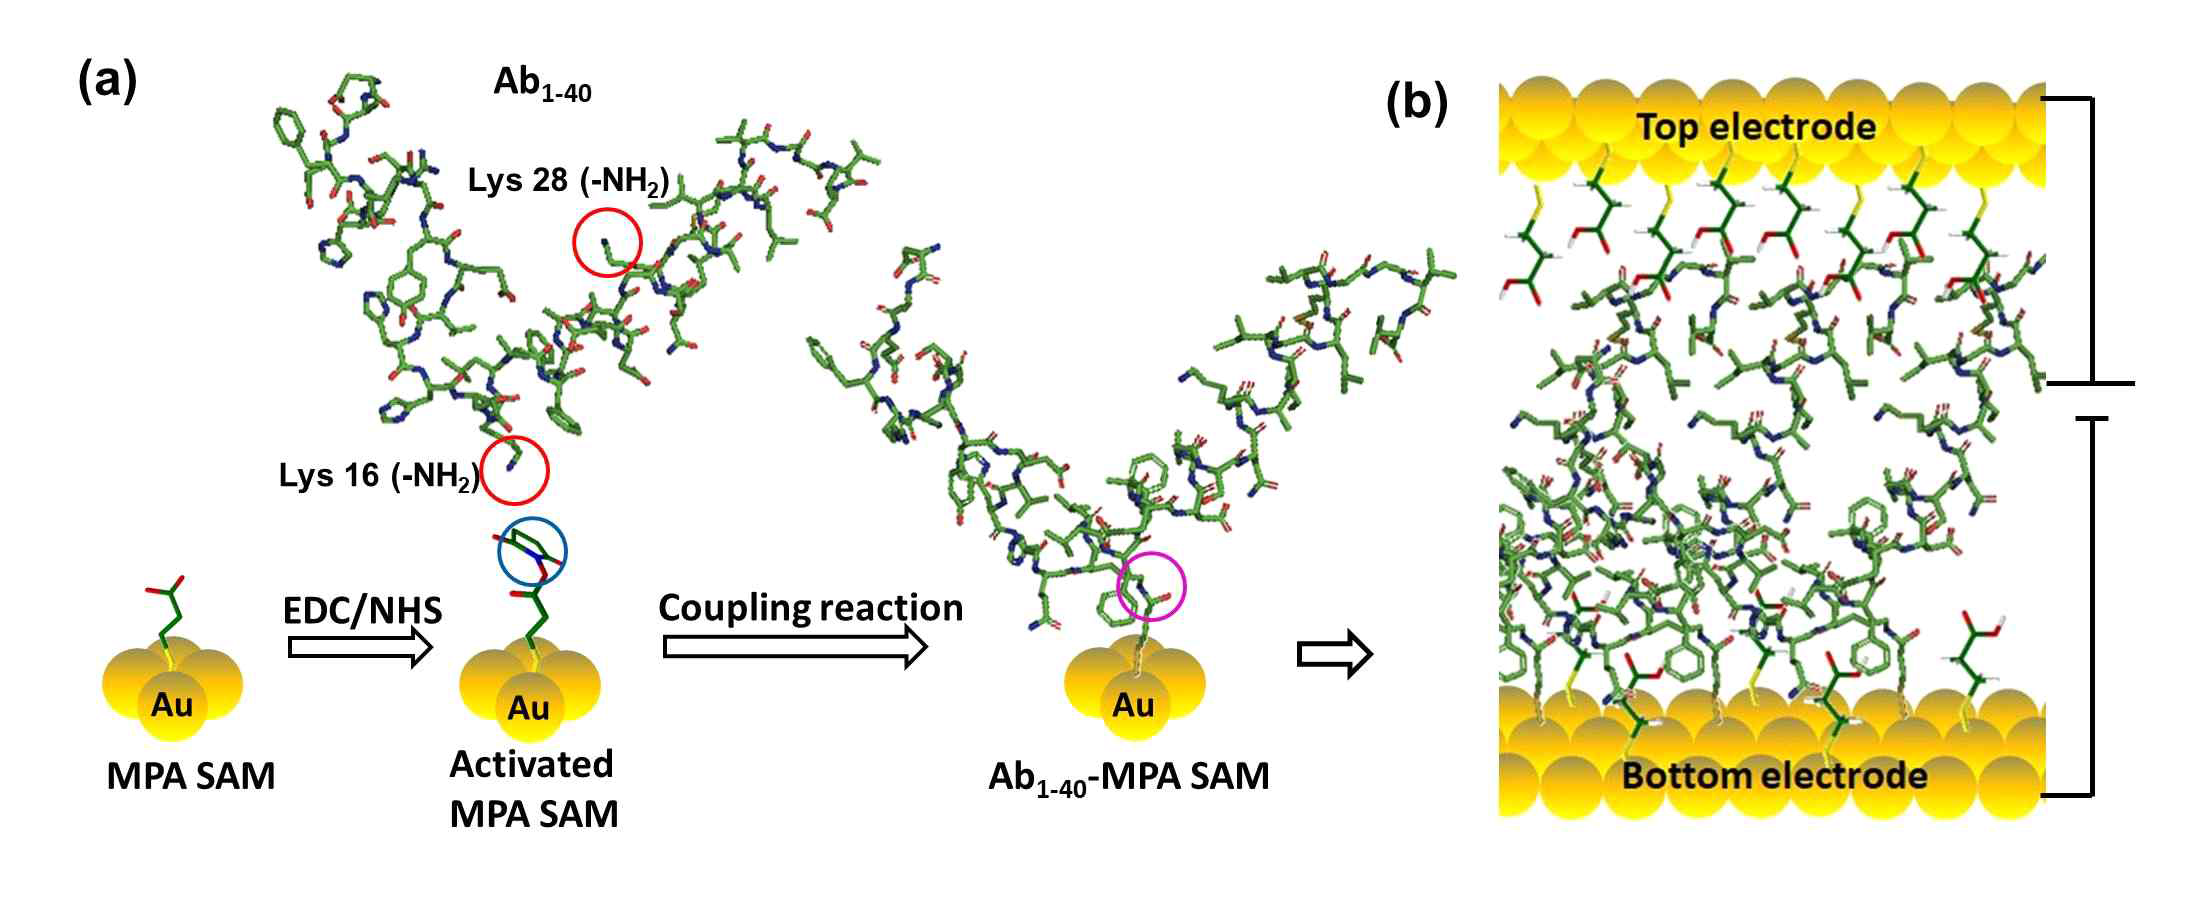 (a)베타아밀로이드 (Ab1-40) 흡착 반응. (b) 수직구조 분자전자 소자 플랫폼 적용